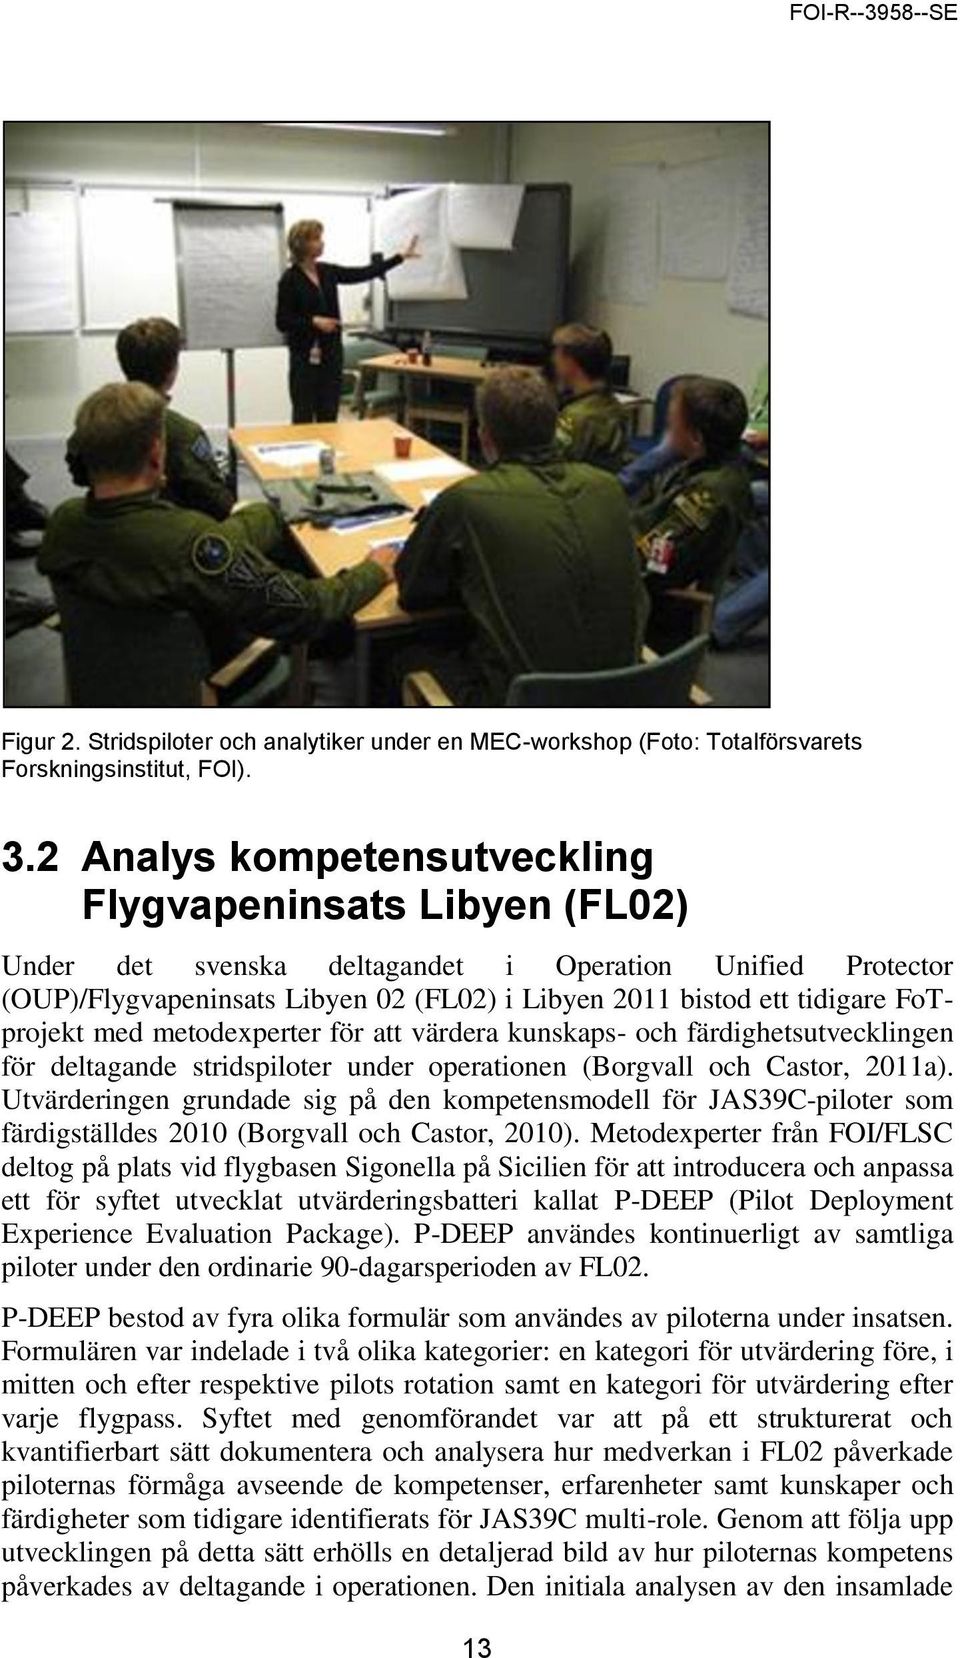 FoTprojekt med metodexperter för att värdera kunskaps- och färdighetsutvecklingen för deltagande stridspiloter under operationen (Borgvall och Castor, 2011a).